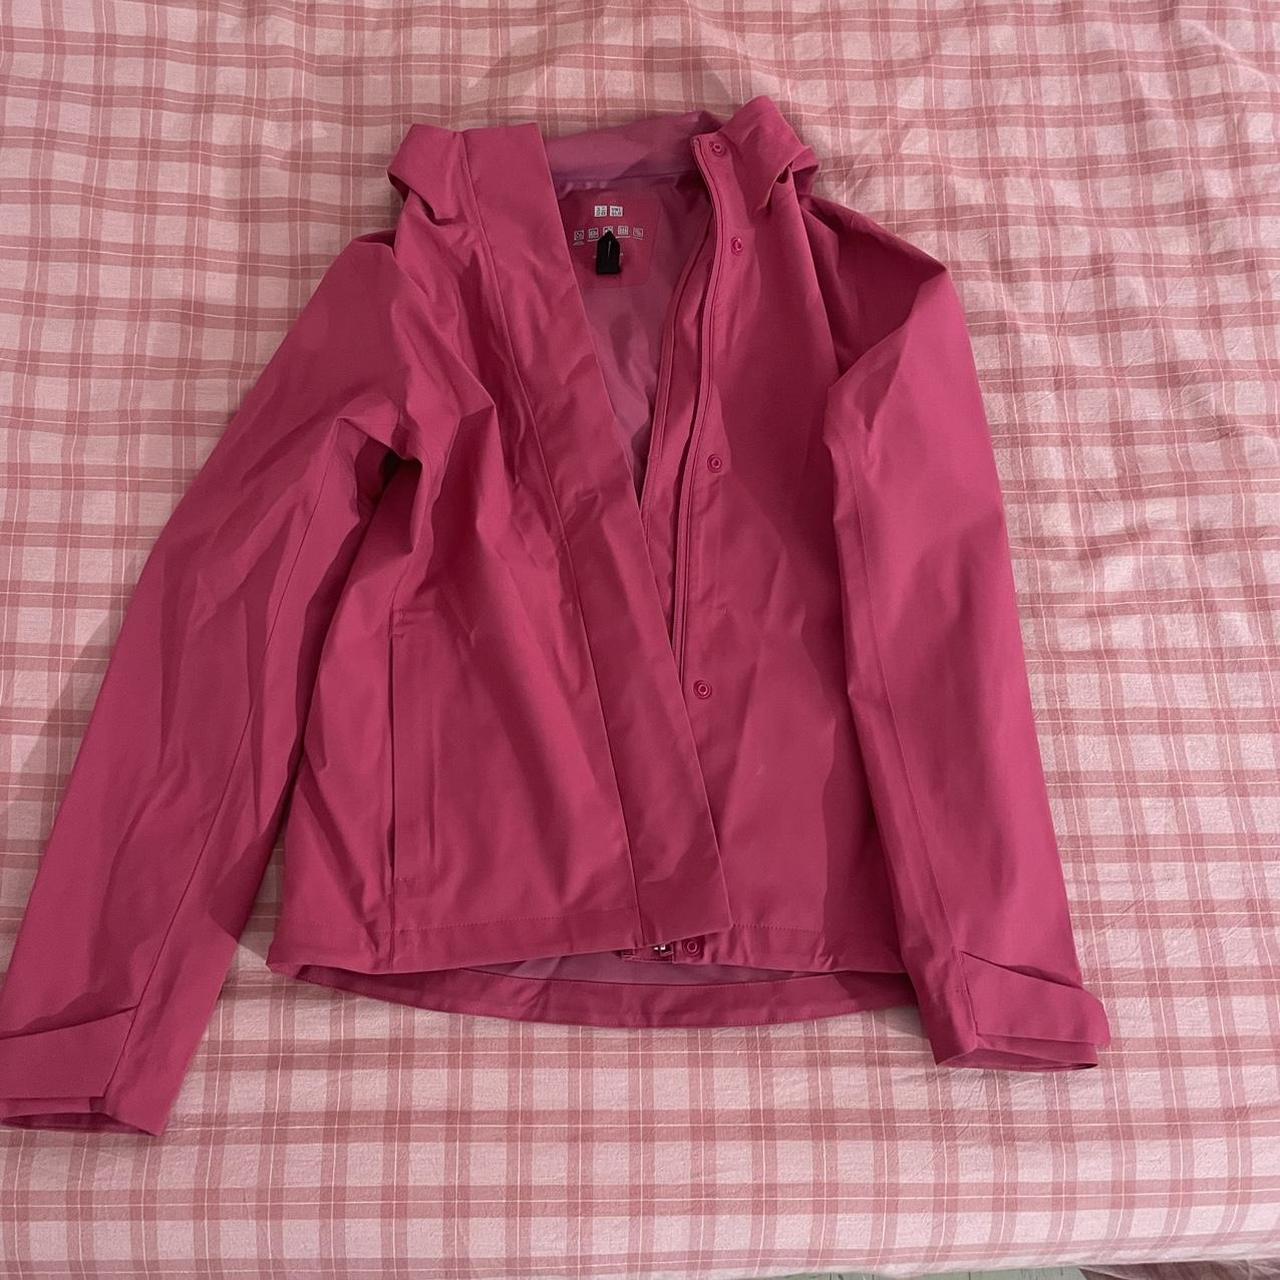 UNIQLO Women's Pink Jacket | Depop